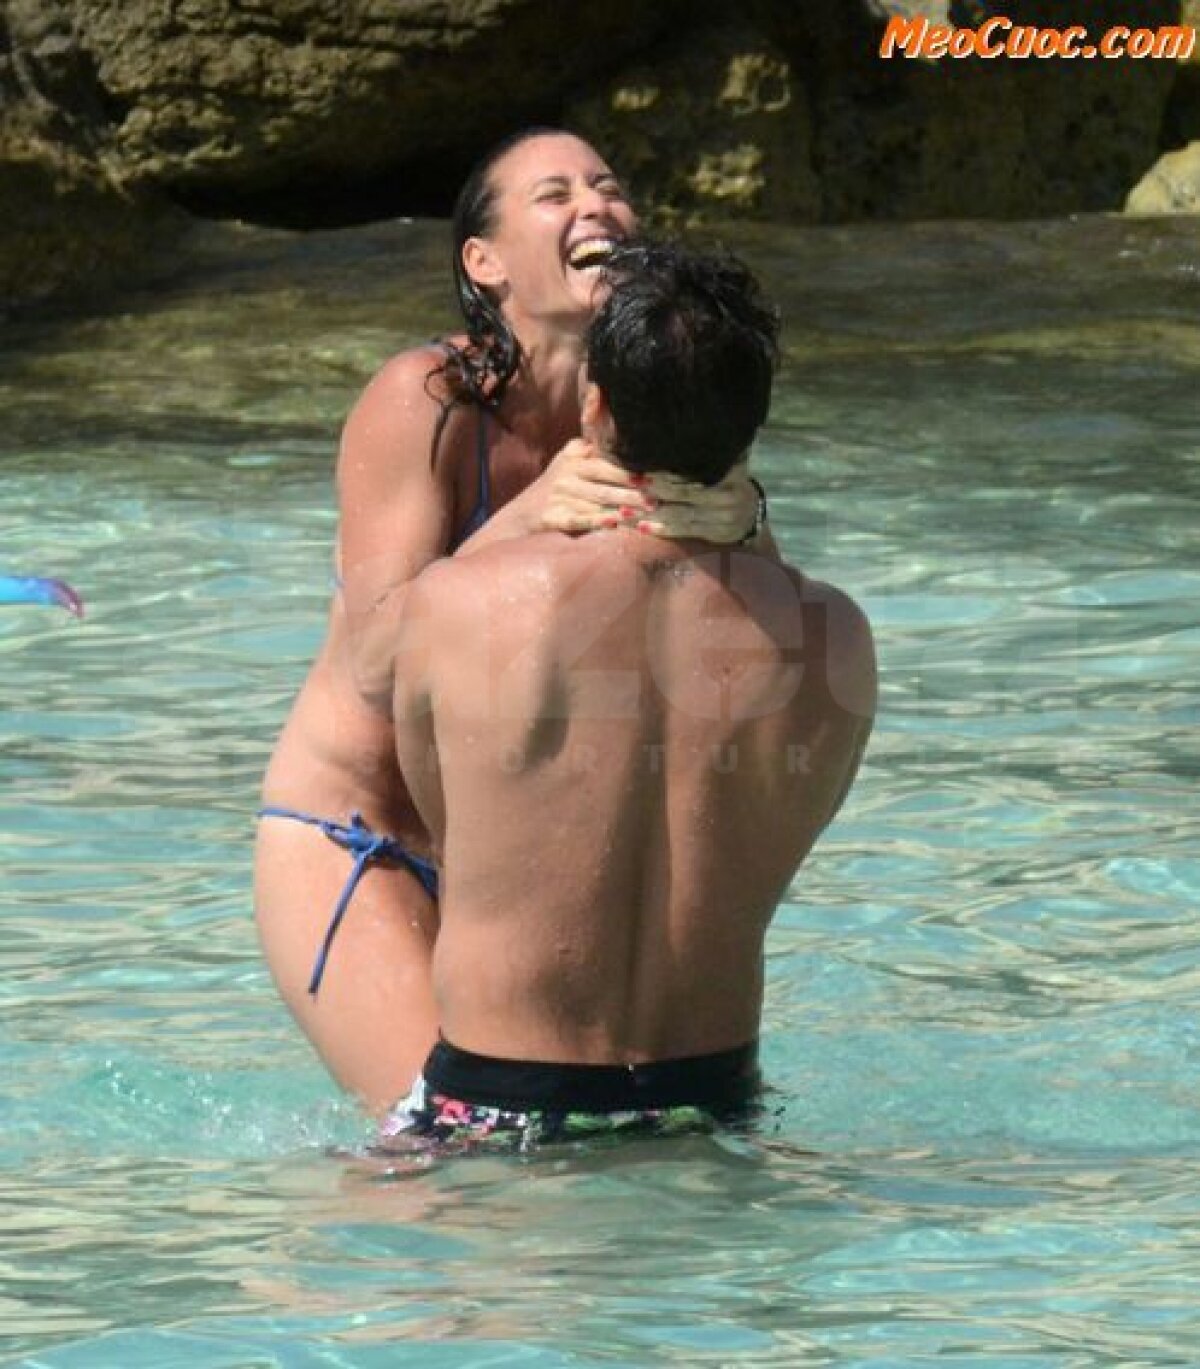 FOTO Amore italiano » Flavia Pennetta şi Fabio Fognini s-au bucurat de cîteva zile la plajă, în Ibiza